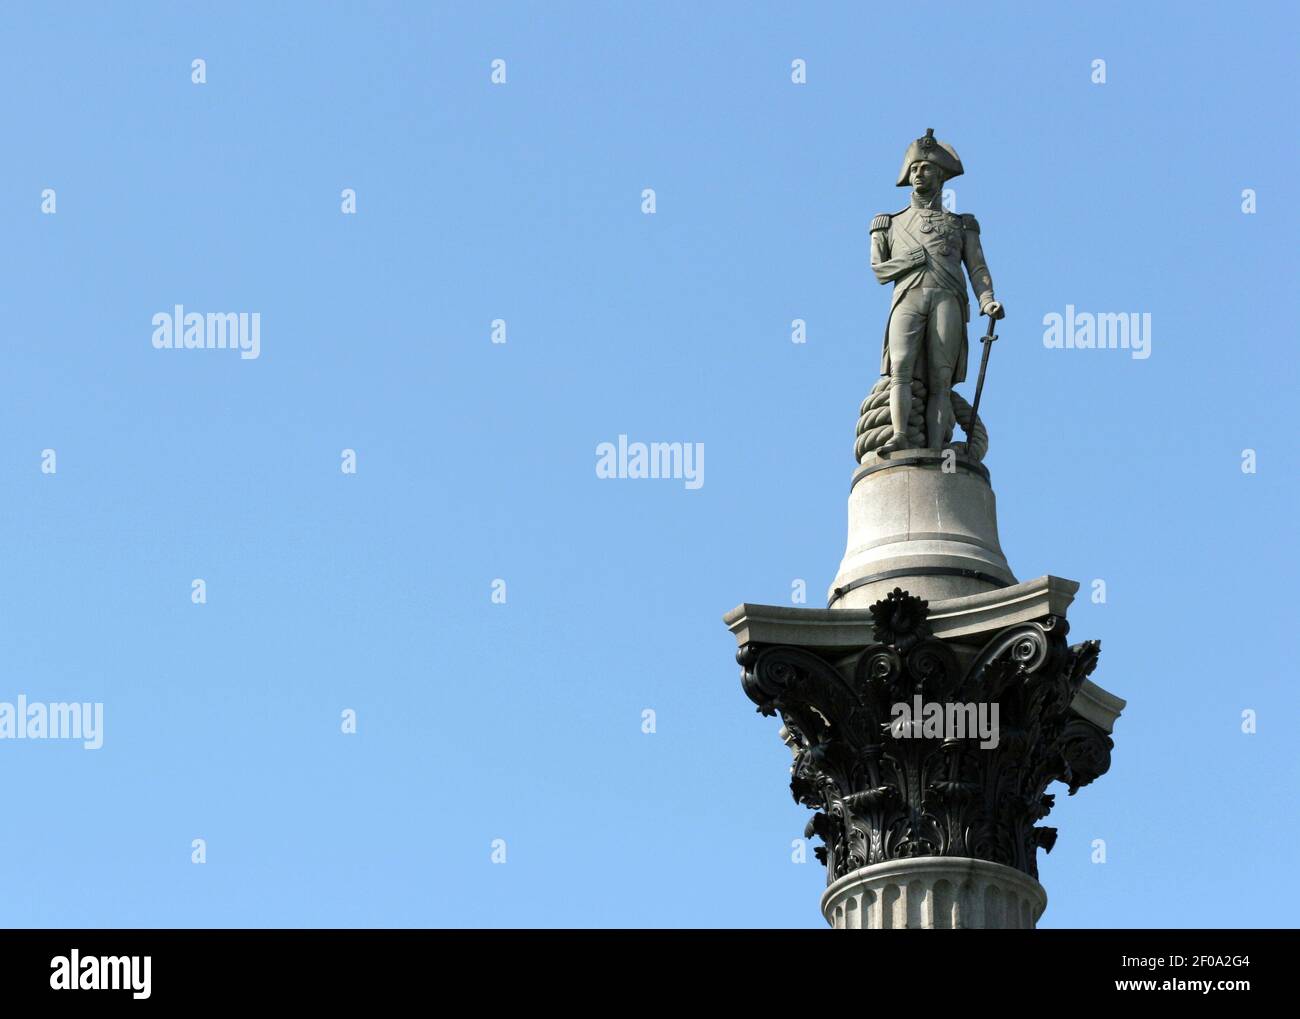 25 avril 2011. Londres, Angleterre. La statue de Lord Nelson se dresse au-dessus de la colonne Nelson à Trafalgar Square. Crédit photo: Charlie Varley/Sipa USA Banque D'Images